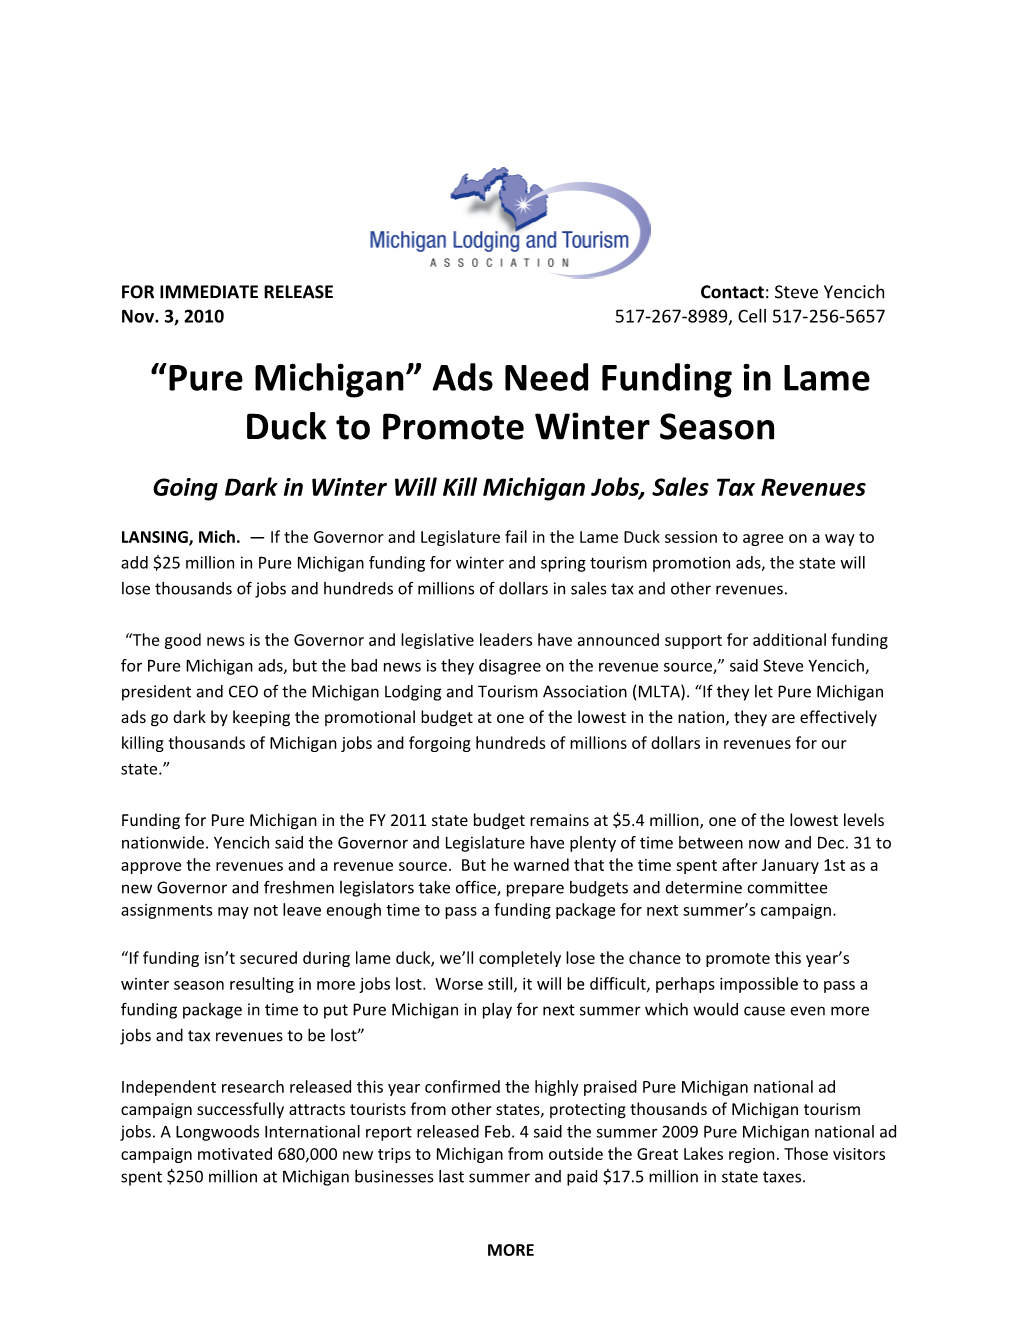 Fund Pure Michigan in Lame Duck